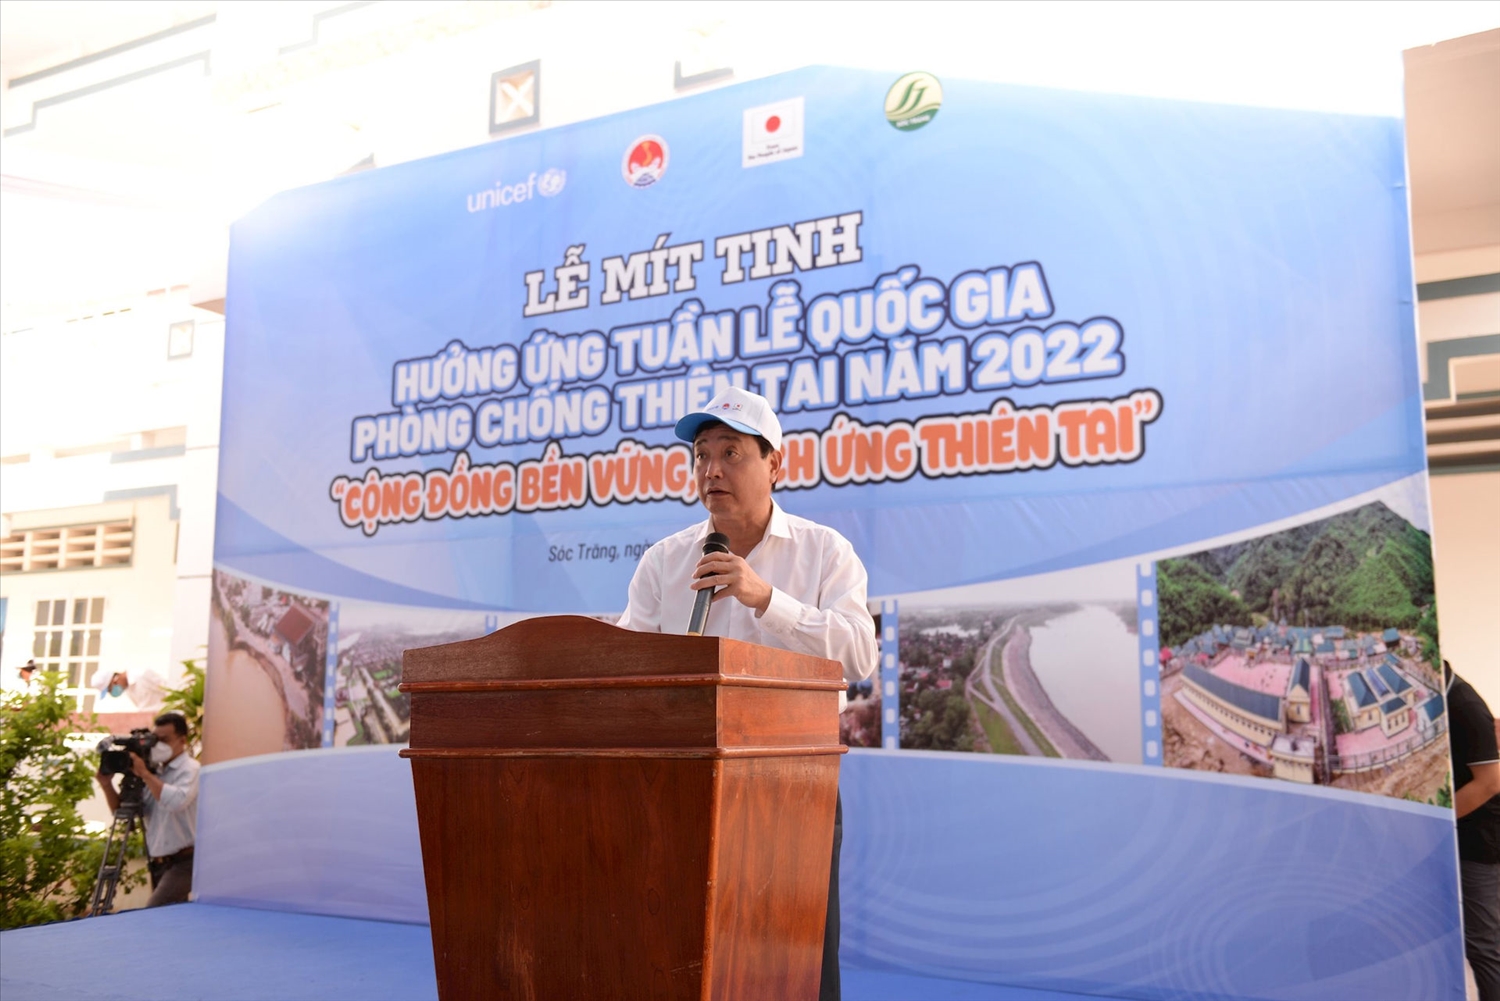 Ông Trần Quang Hoài Phó Trưởng ban Ban Chỉ đạo quốc gia về Phòng, chống thiên tai (Tổng cục trưởng Tổng cục Phòng, chống thiên tai) phát biểu tại buổi lễ